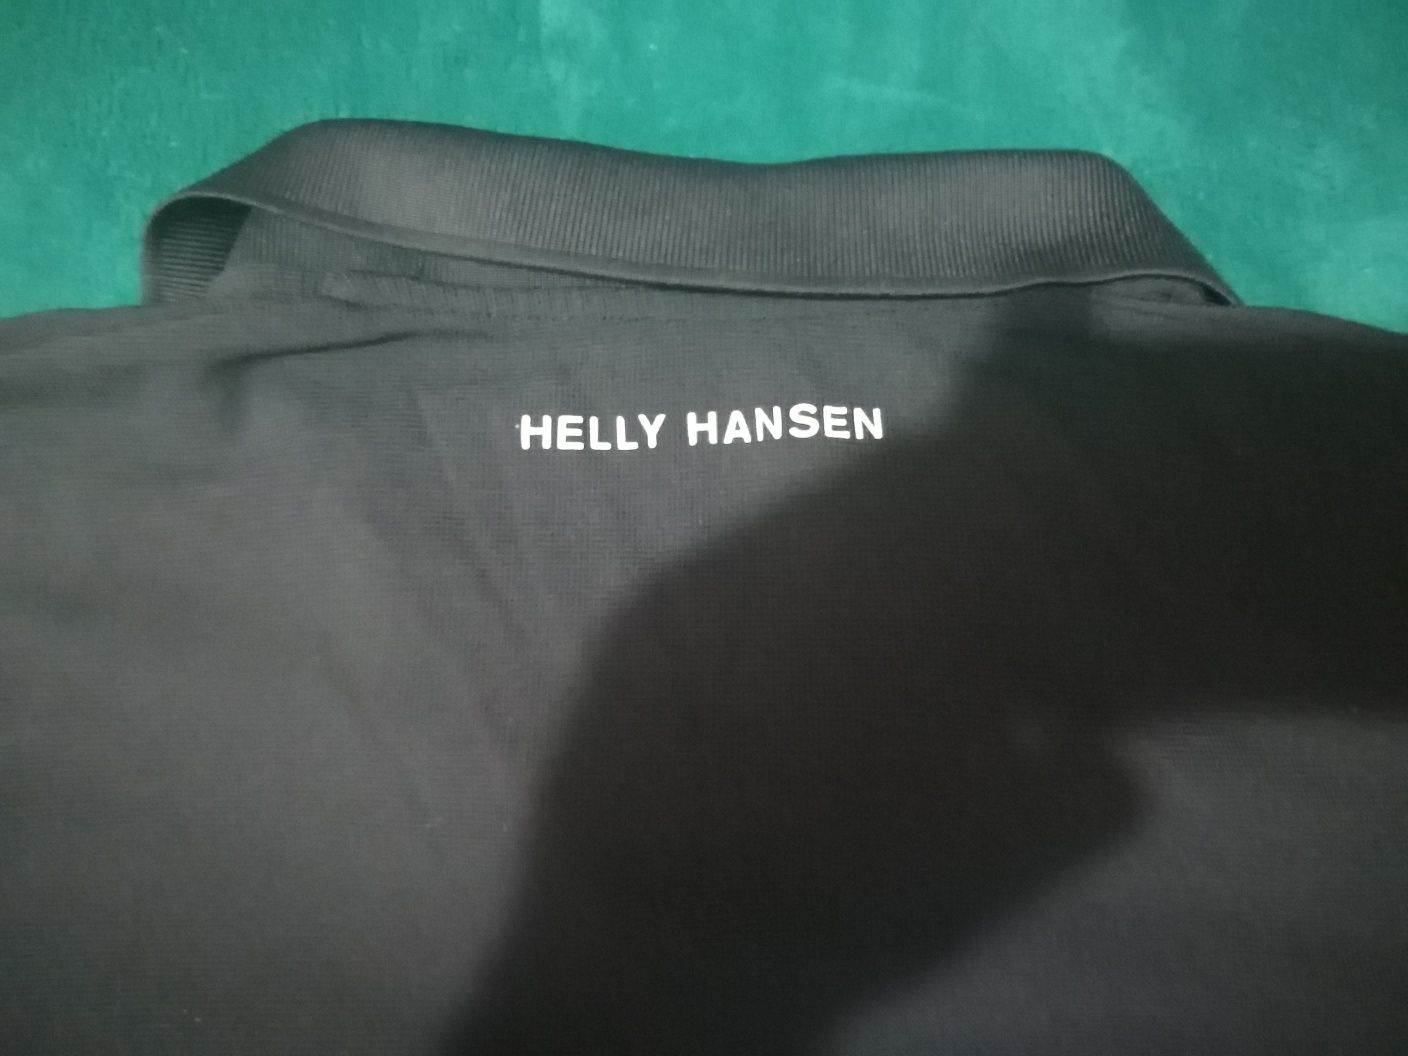 Tricou Helly Hansen